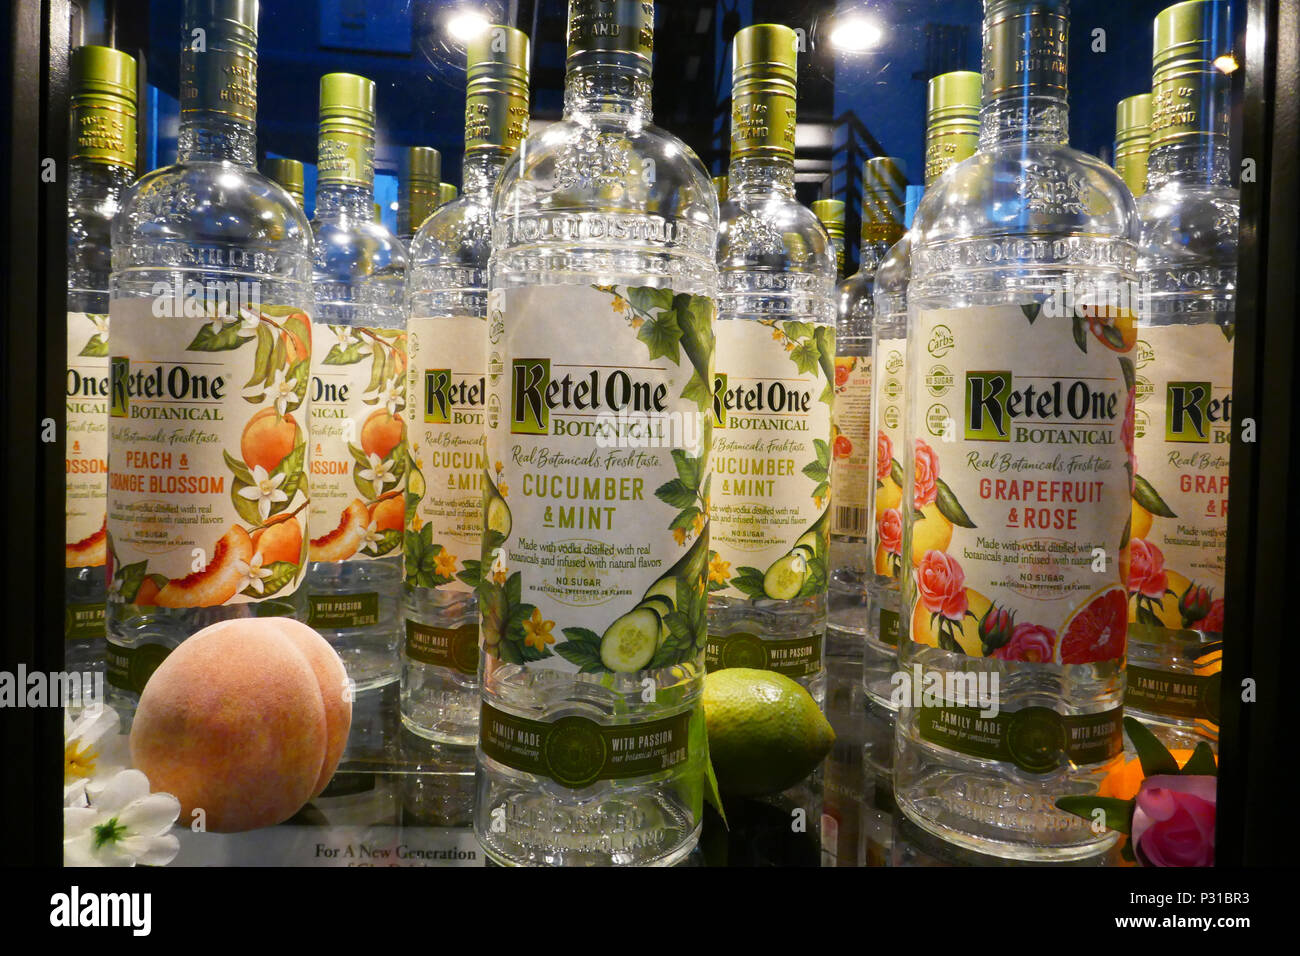 Promoción botellas de vodka botánicos para exportar en tienda de Nolet, Schiedam, Holanda Foto de stock